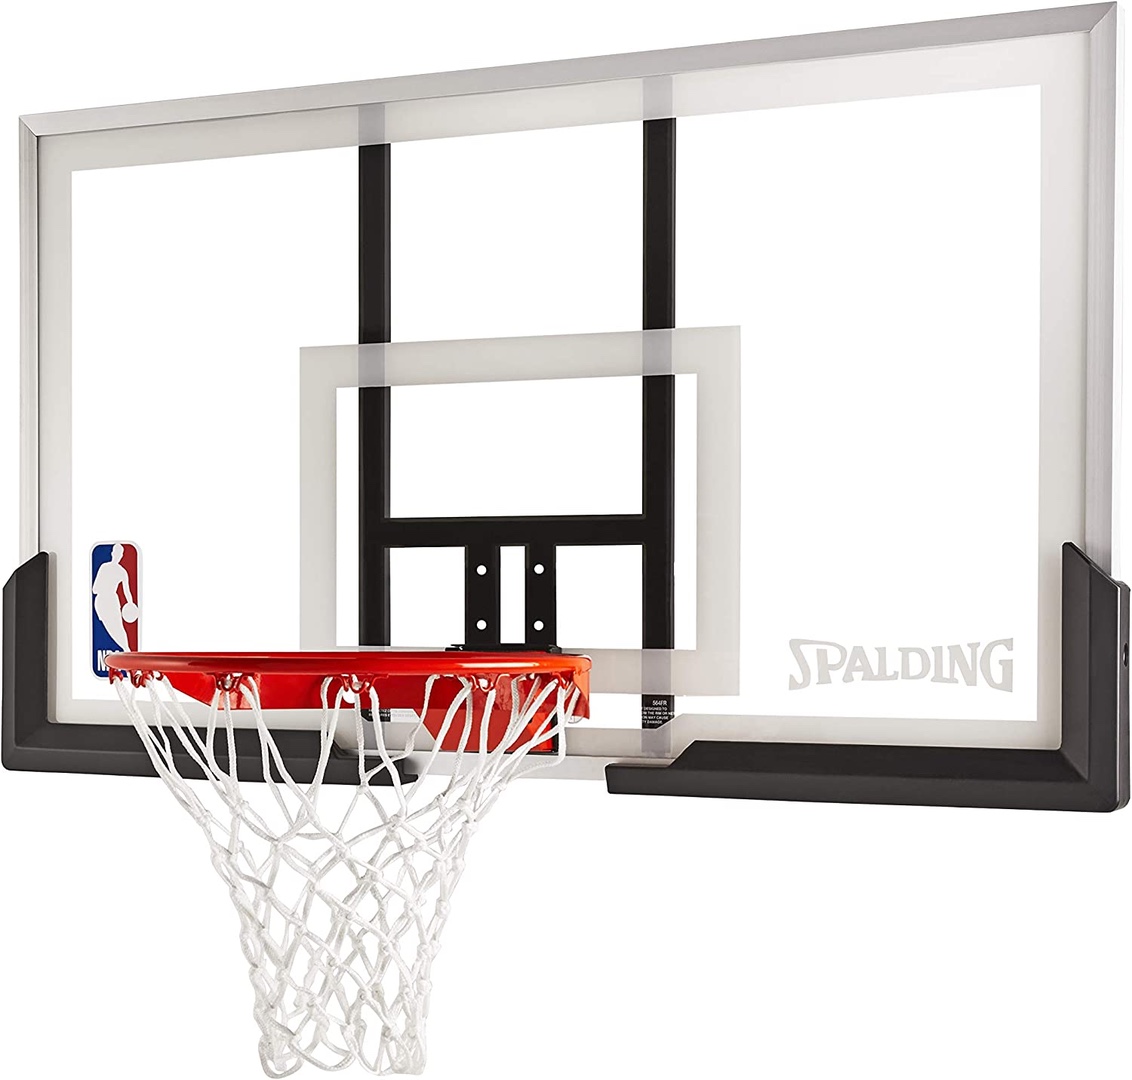 Tablero de basket basketball baloncesto nueva en acrilico con aro, malla y bola 1